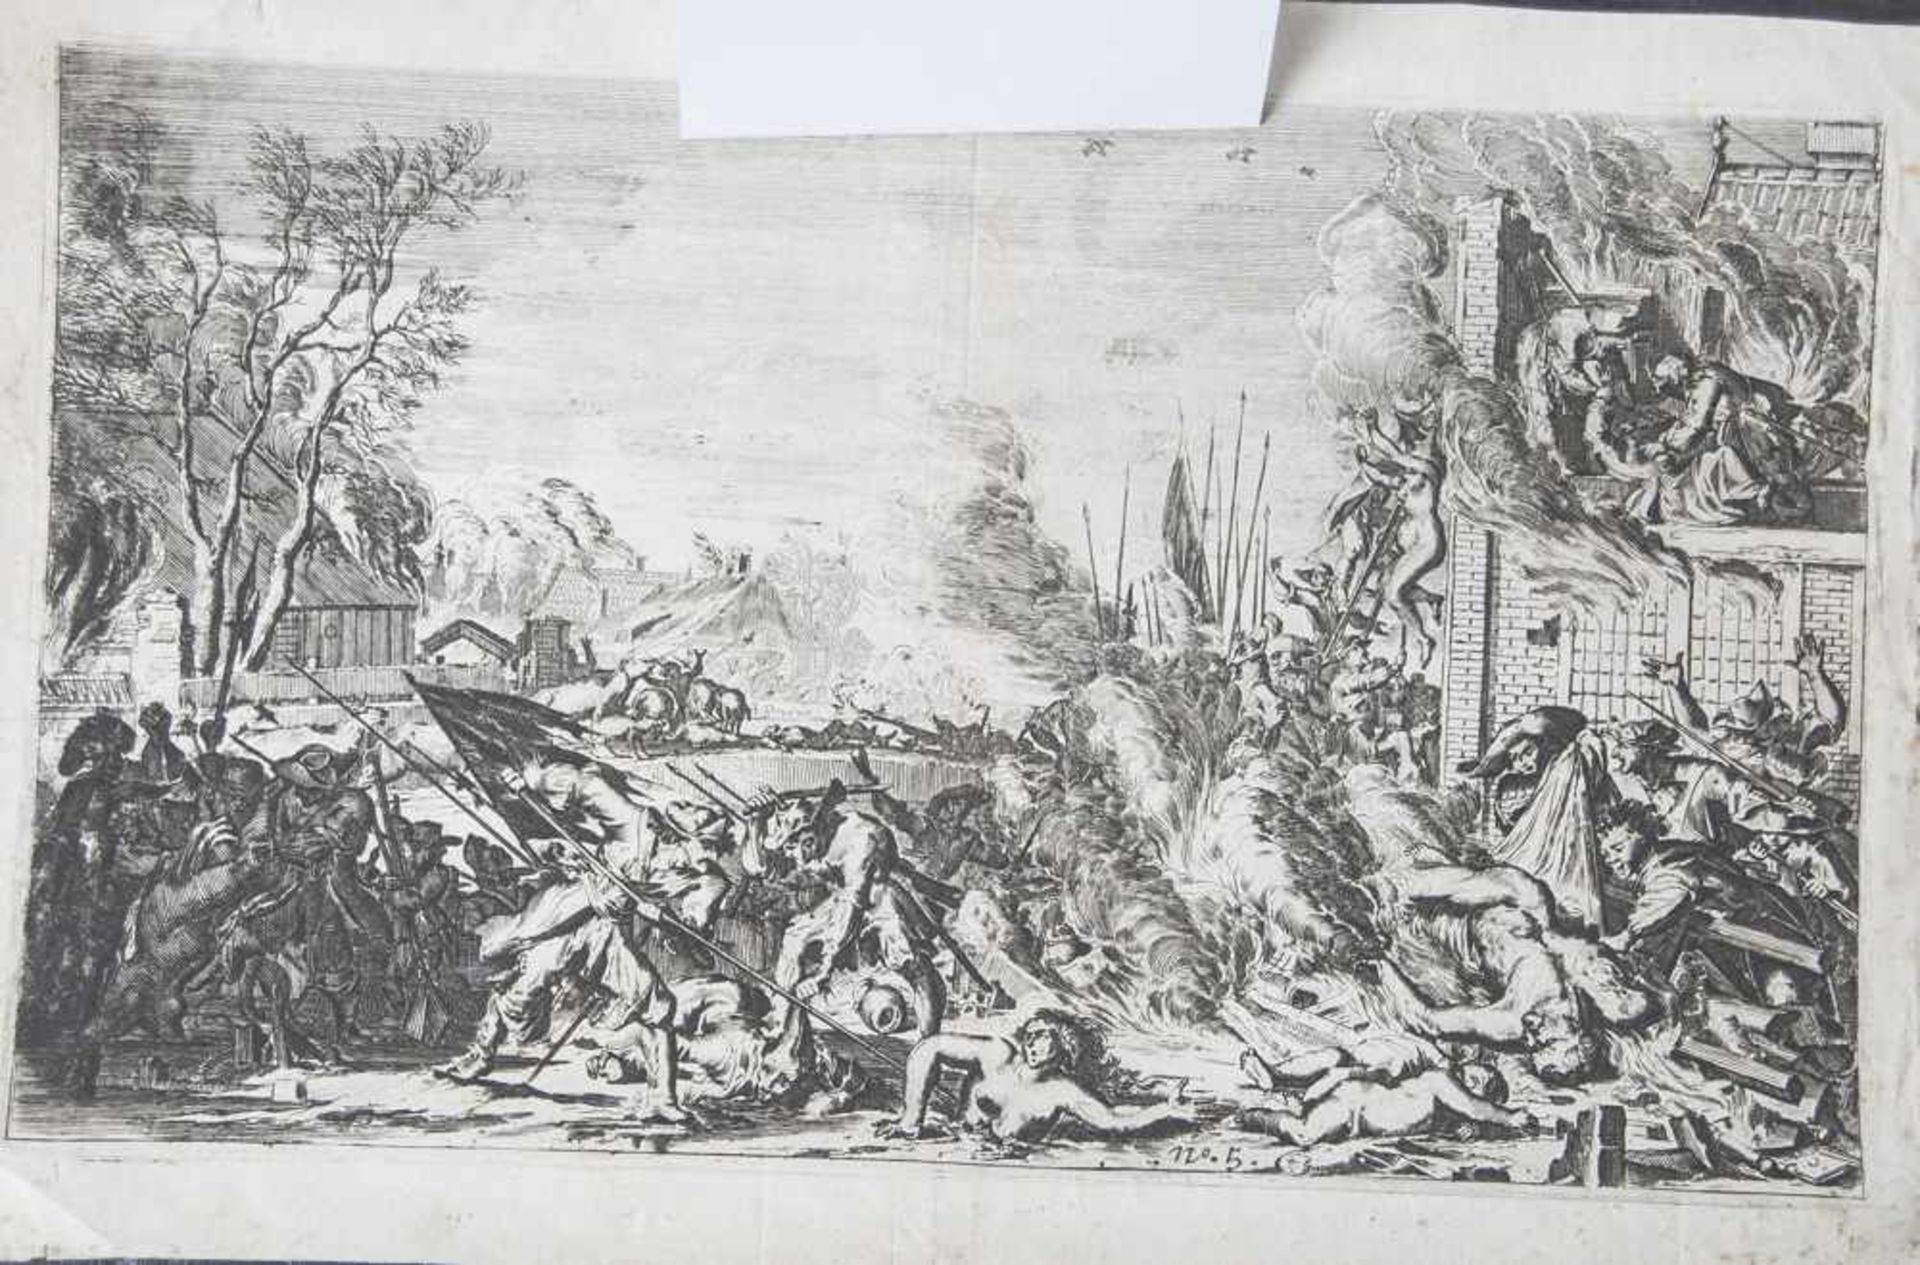 Unbekannter Künstler (wohl 17. Jahrhundert), Brandschatzung, Radierung, mittig bez. No. 5, ca. 18